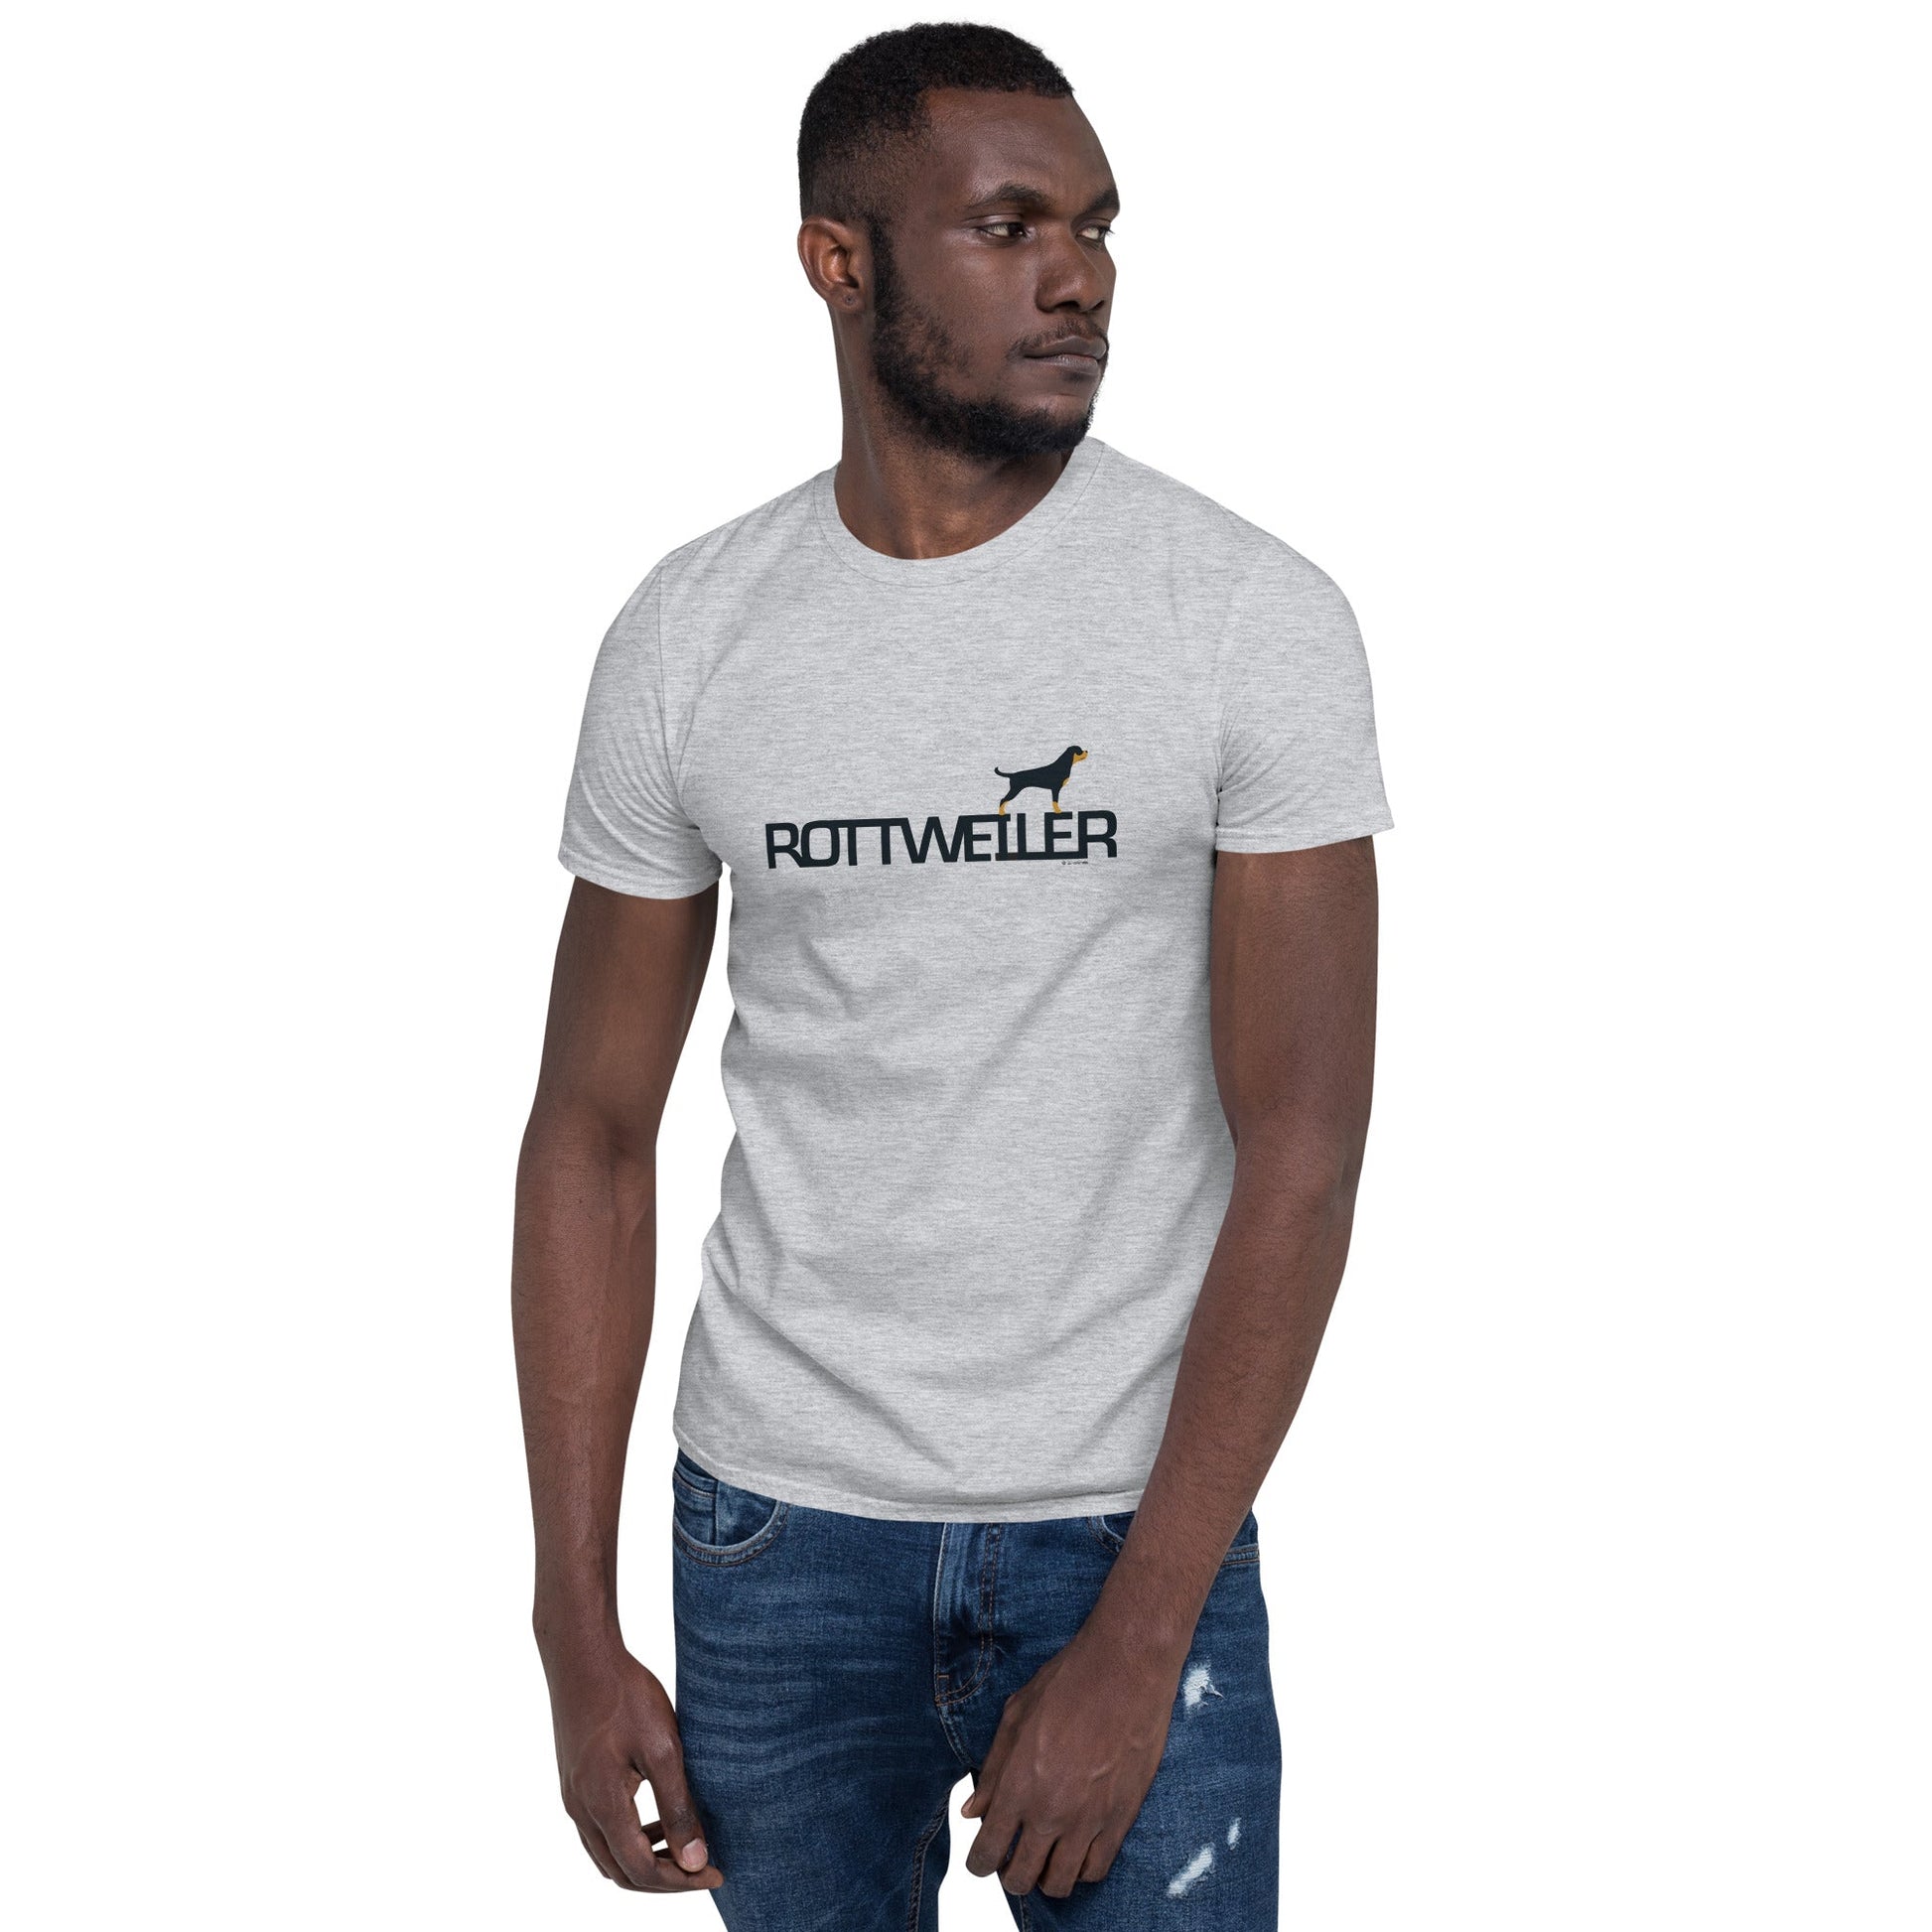 Camiseta unissex de manga curta - Rottweiler - Cores claras i-animals